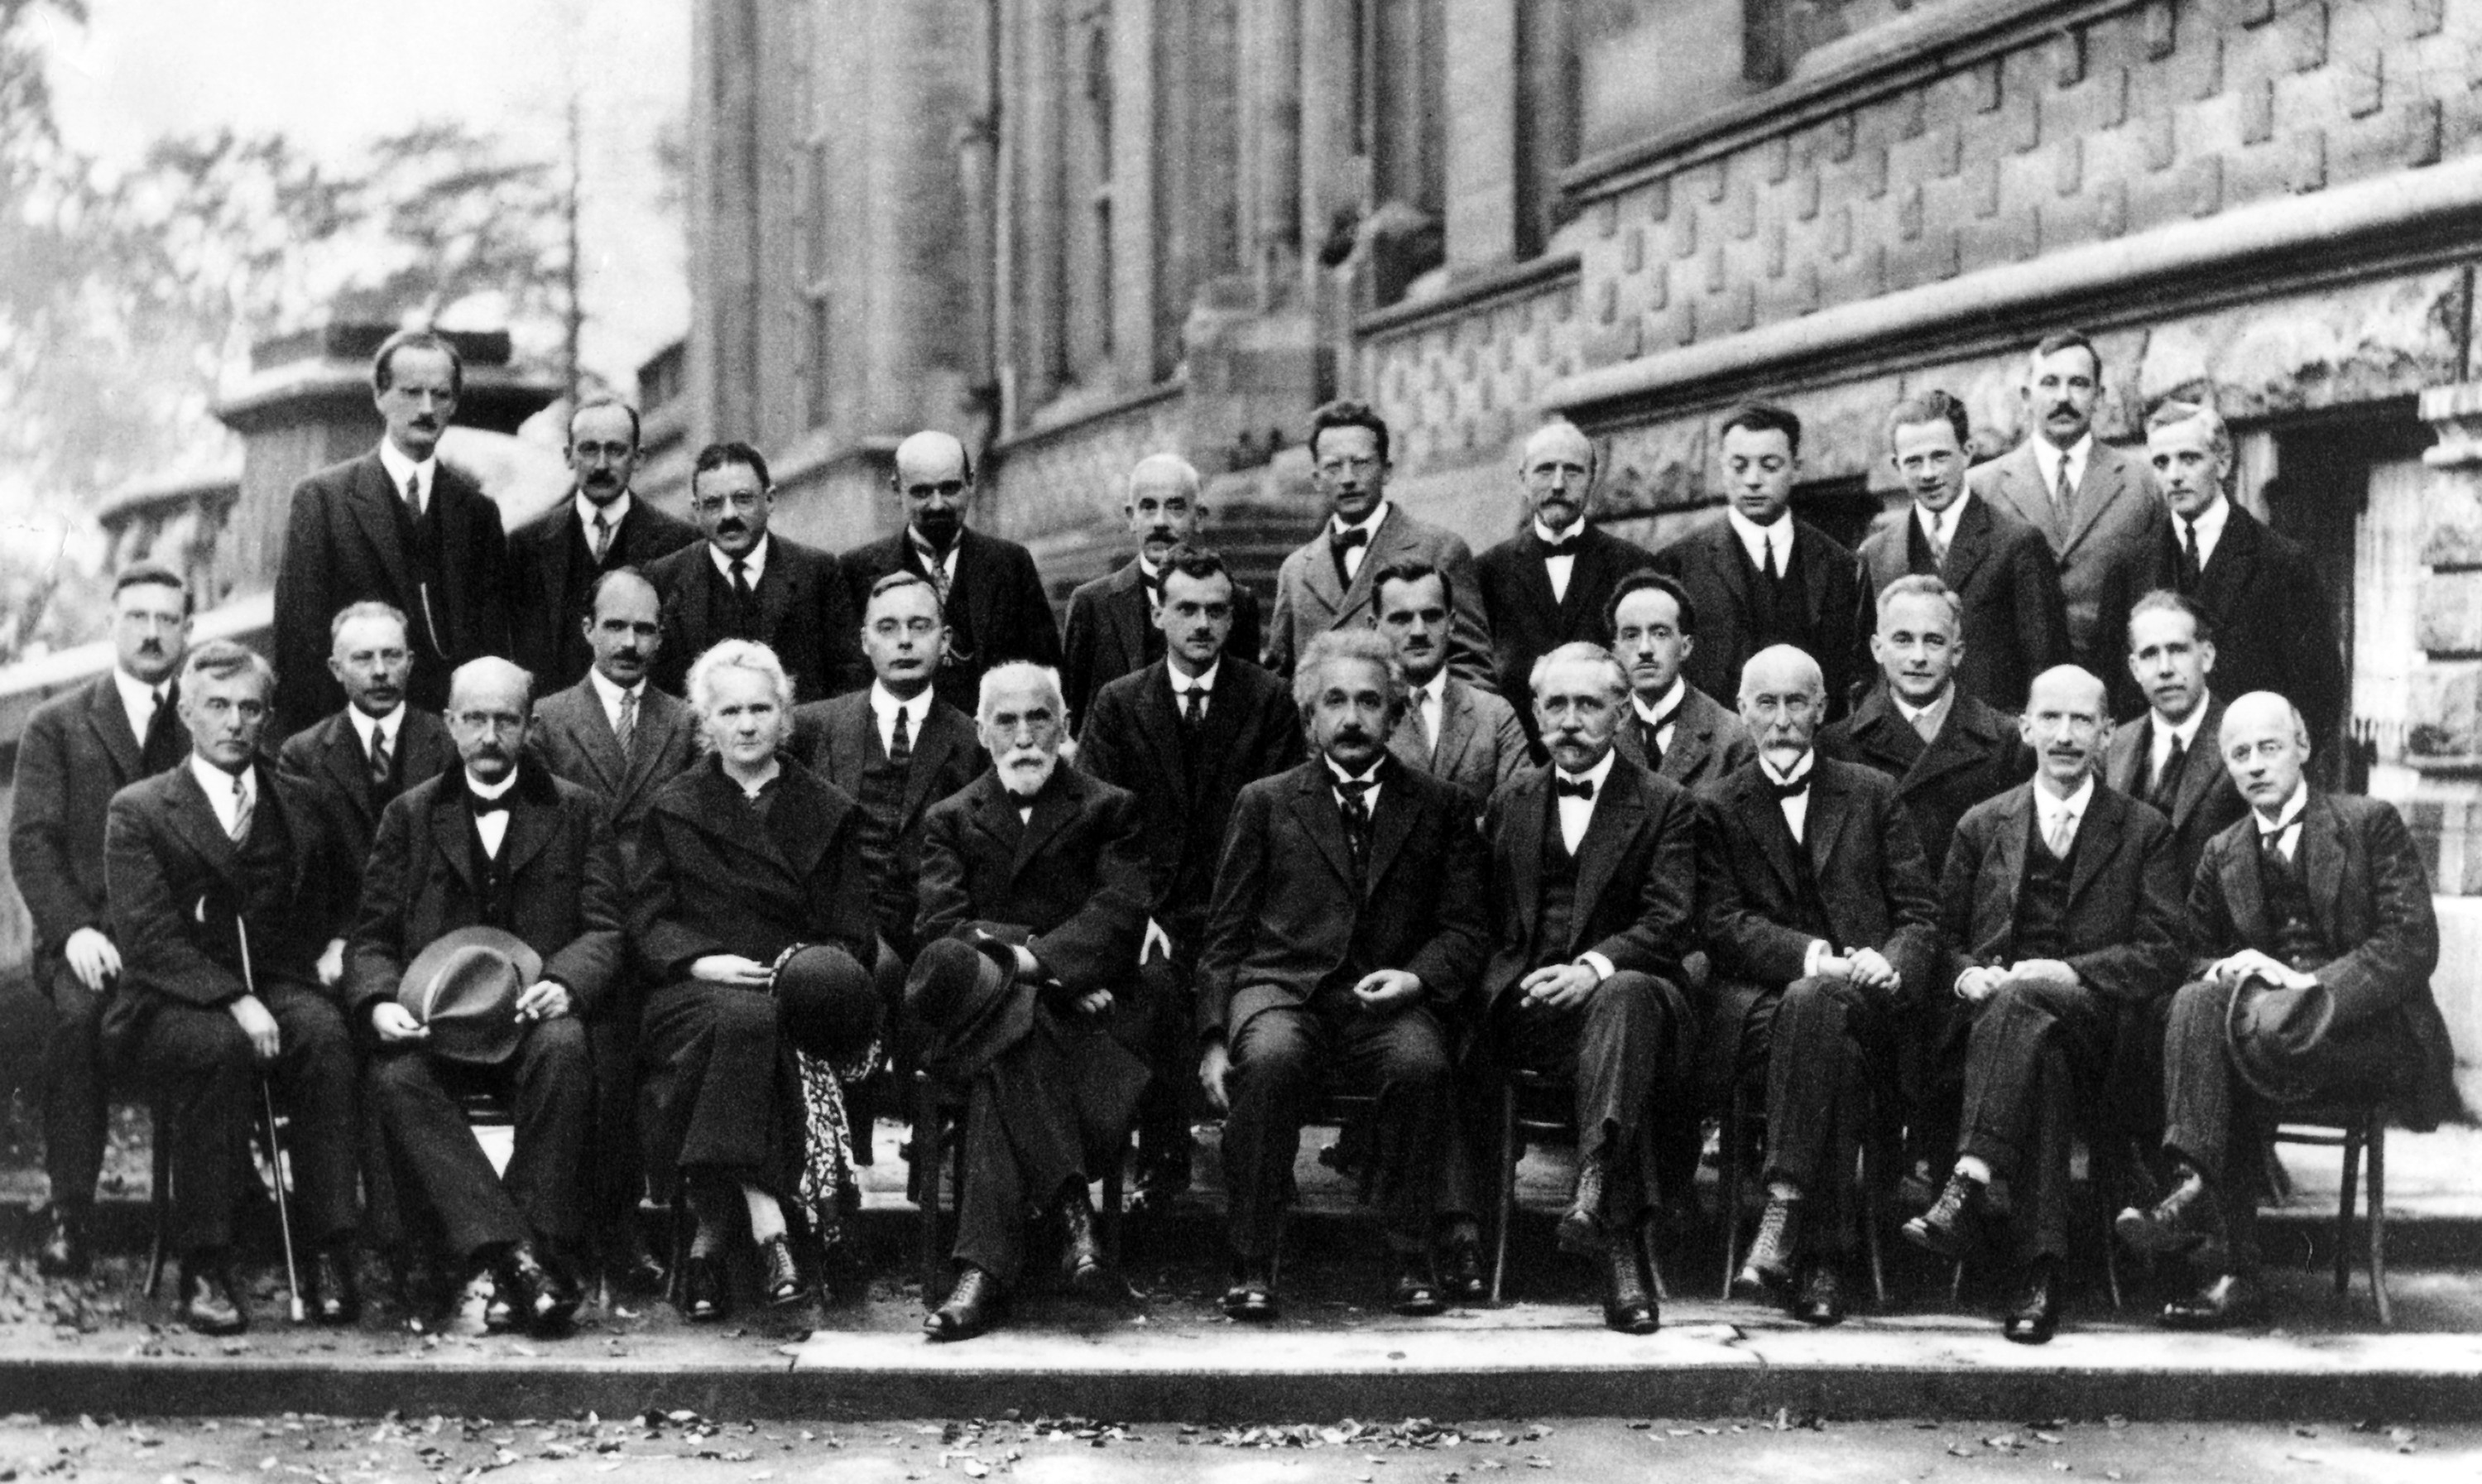 Figure 1: 1927 Solvay Conference on Quantum Mechanics (source: Wikimedia).